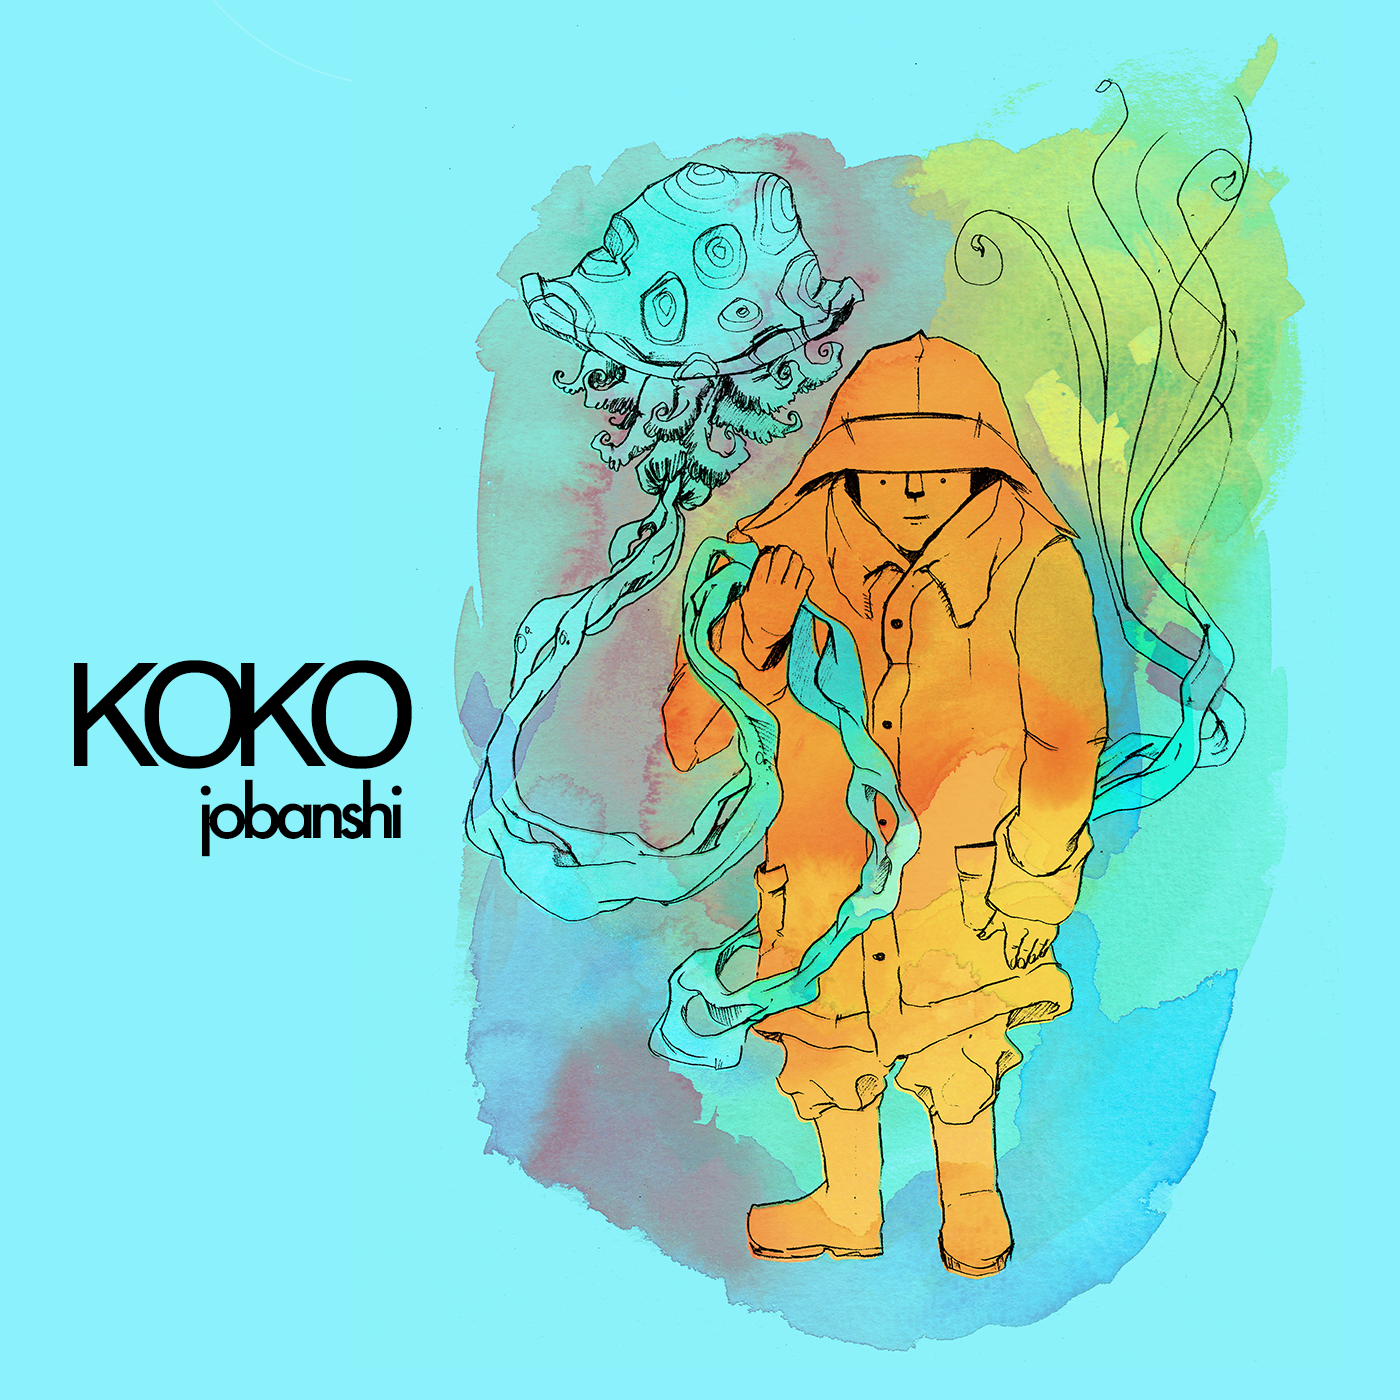 Koko : Jobanshi : Free Download, Borrow, and Streaming : Internet 